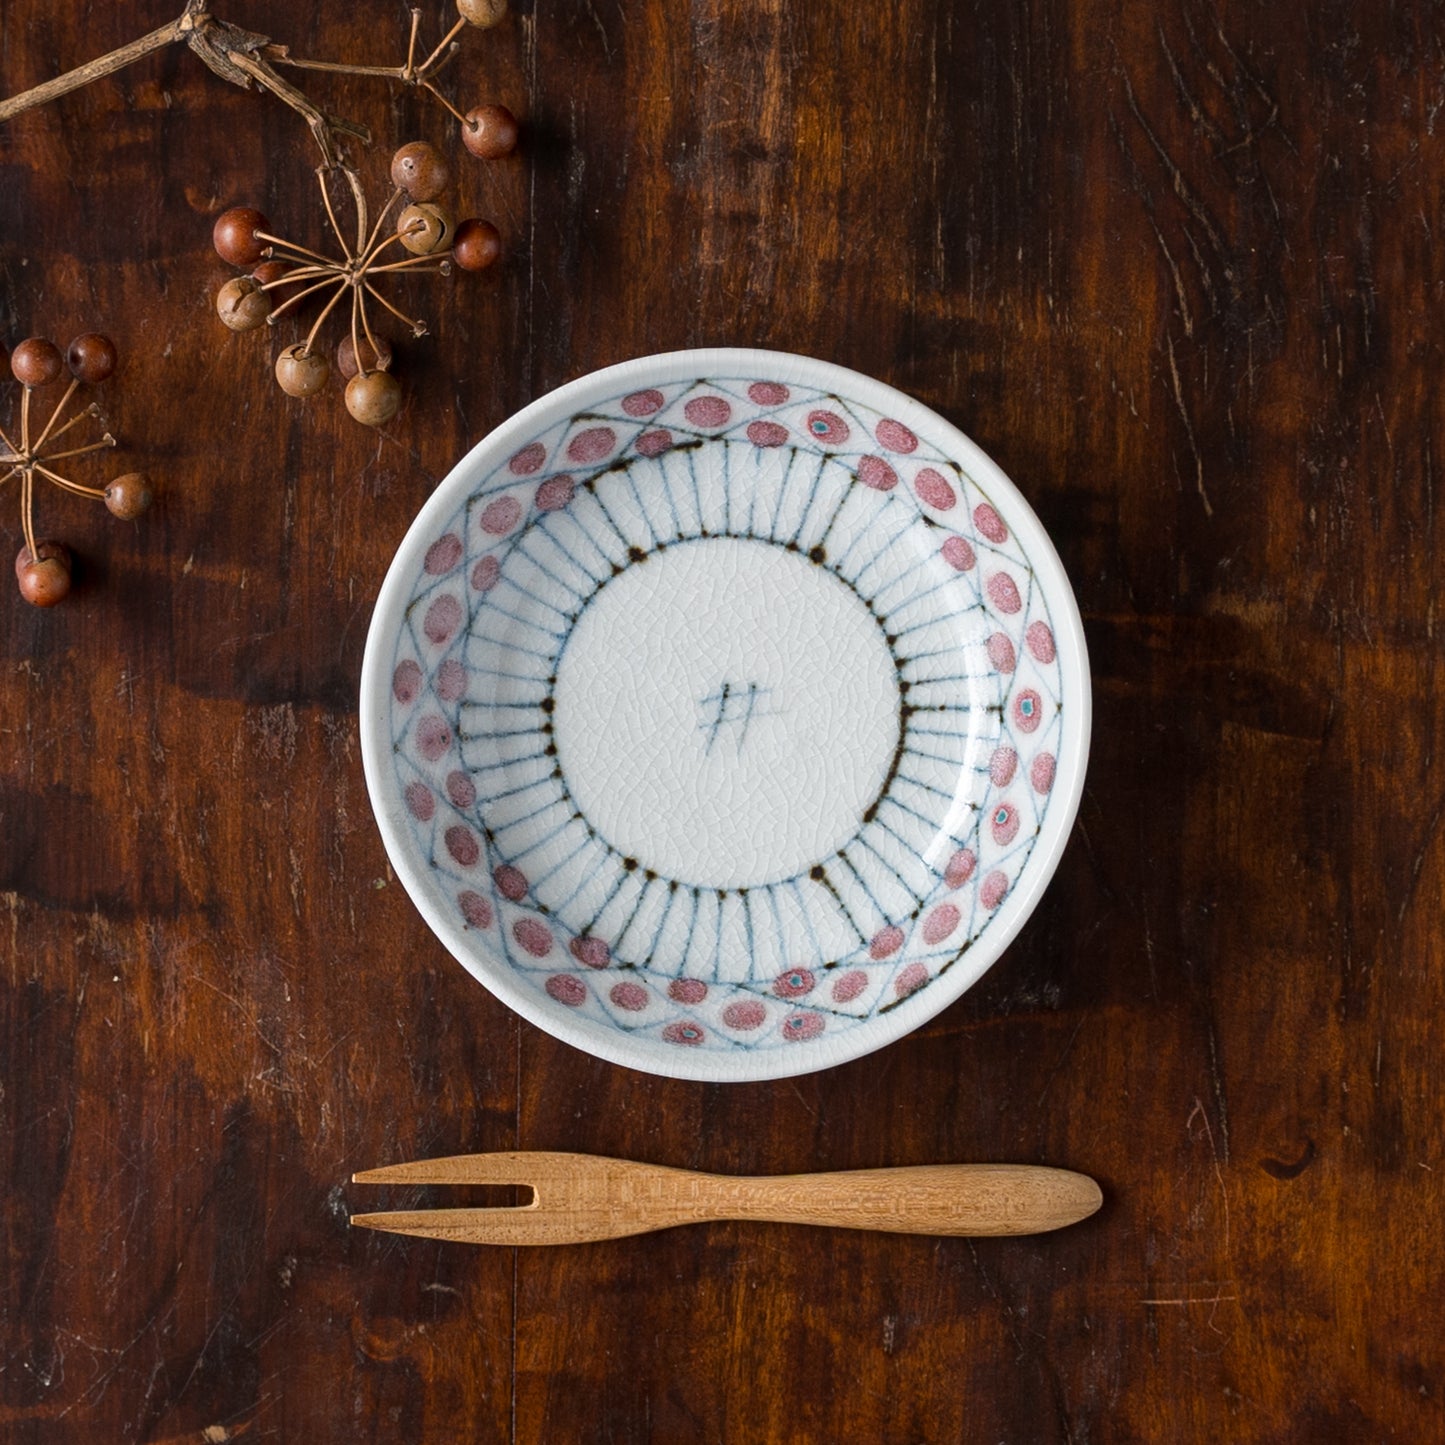 和菓子にぴったり合う砥部焼陶彩窯の花垣文3.5寸皿